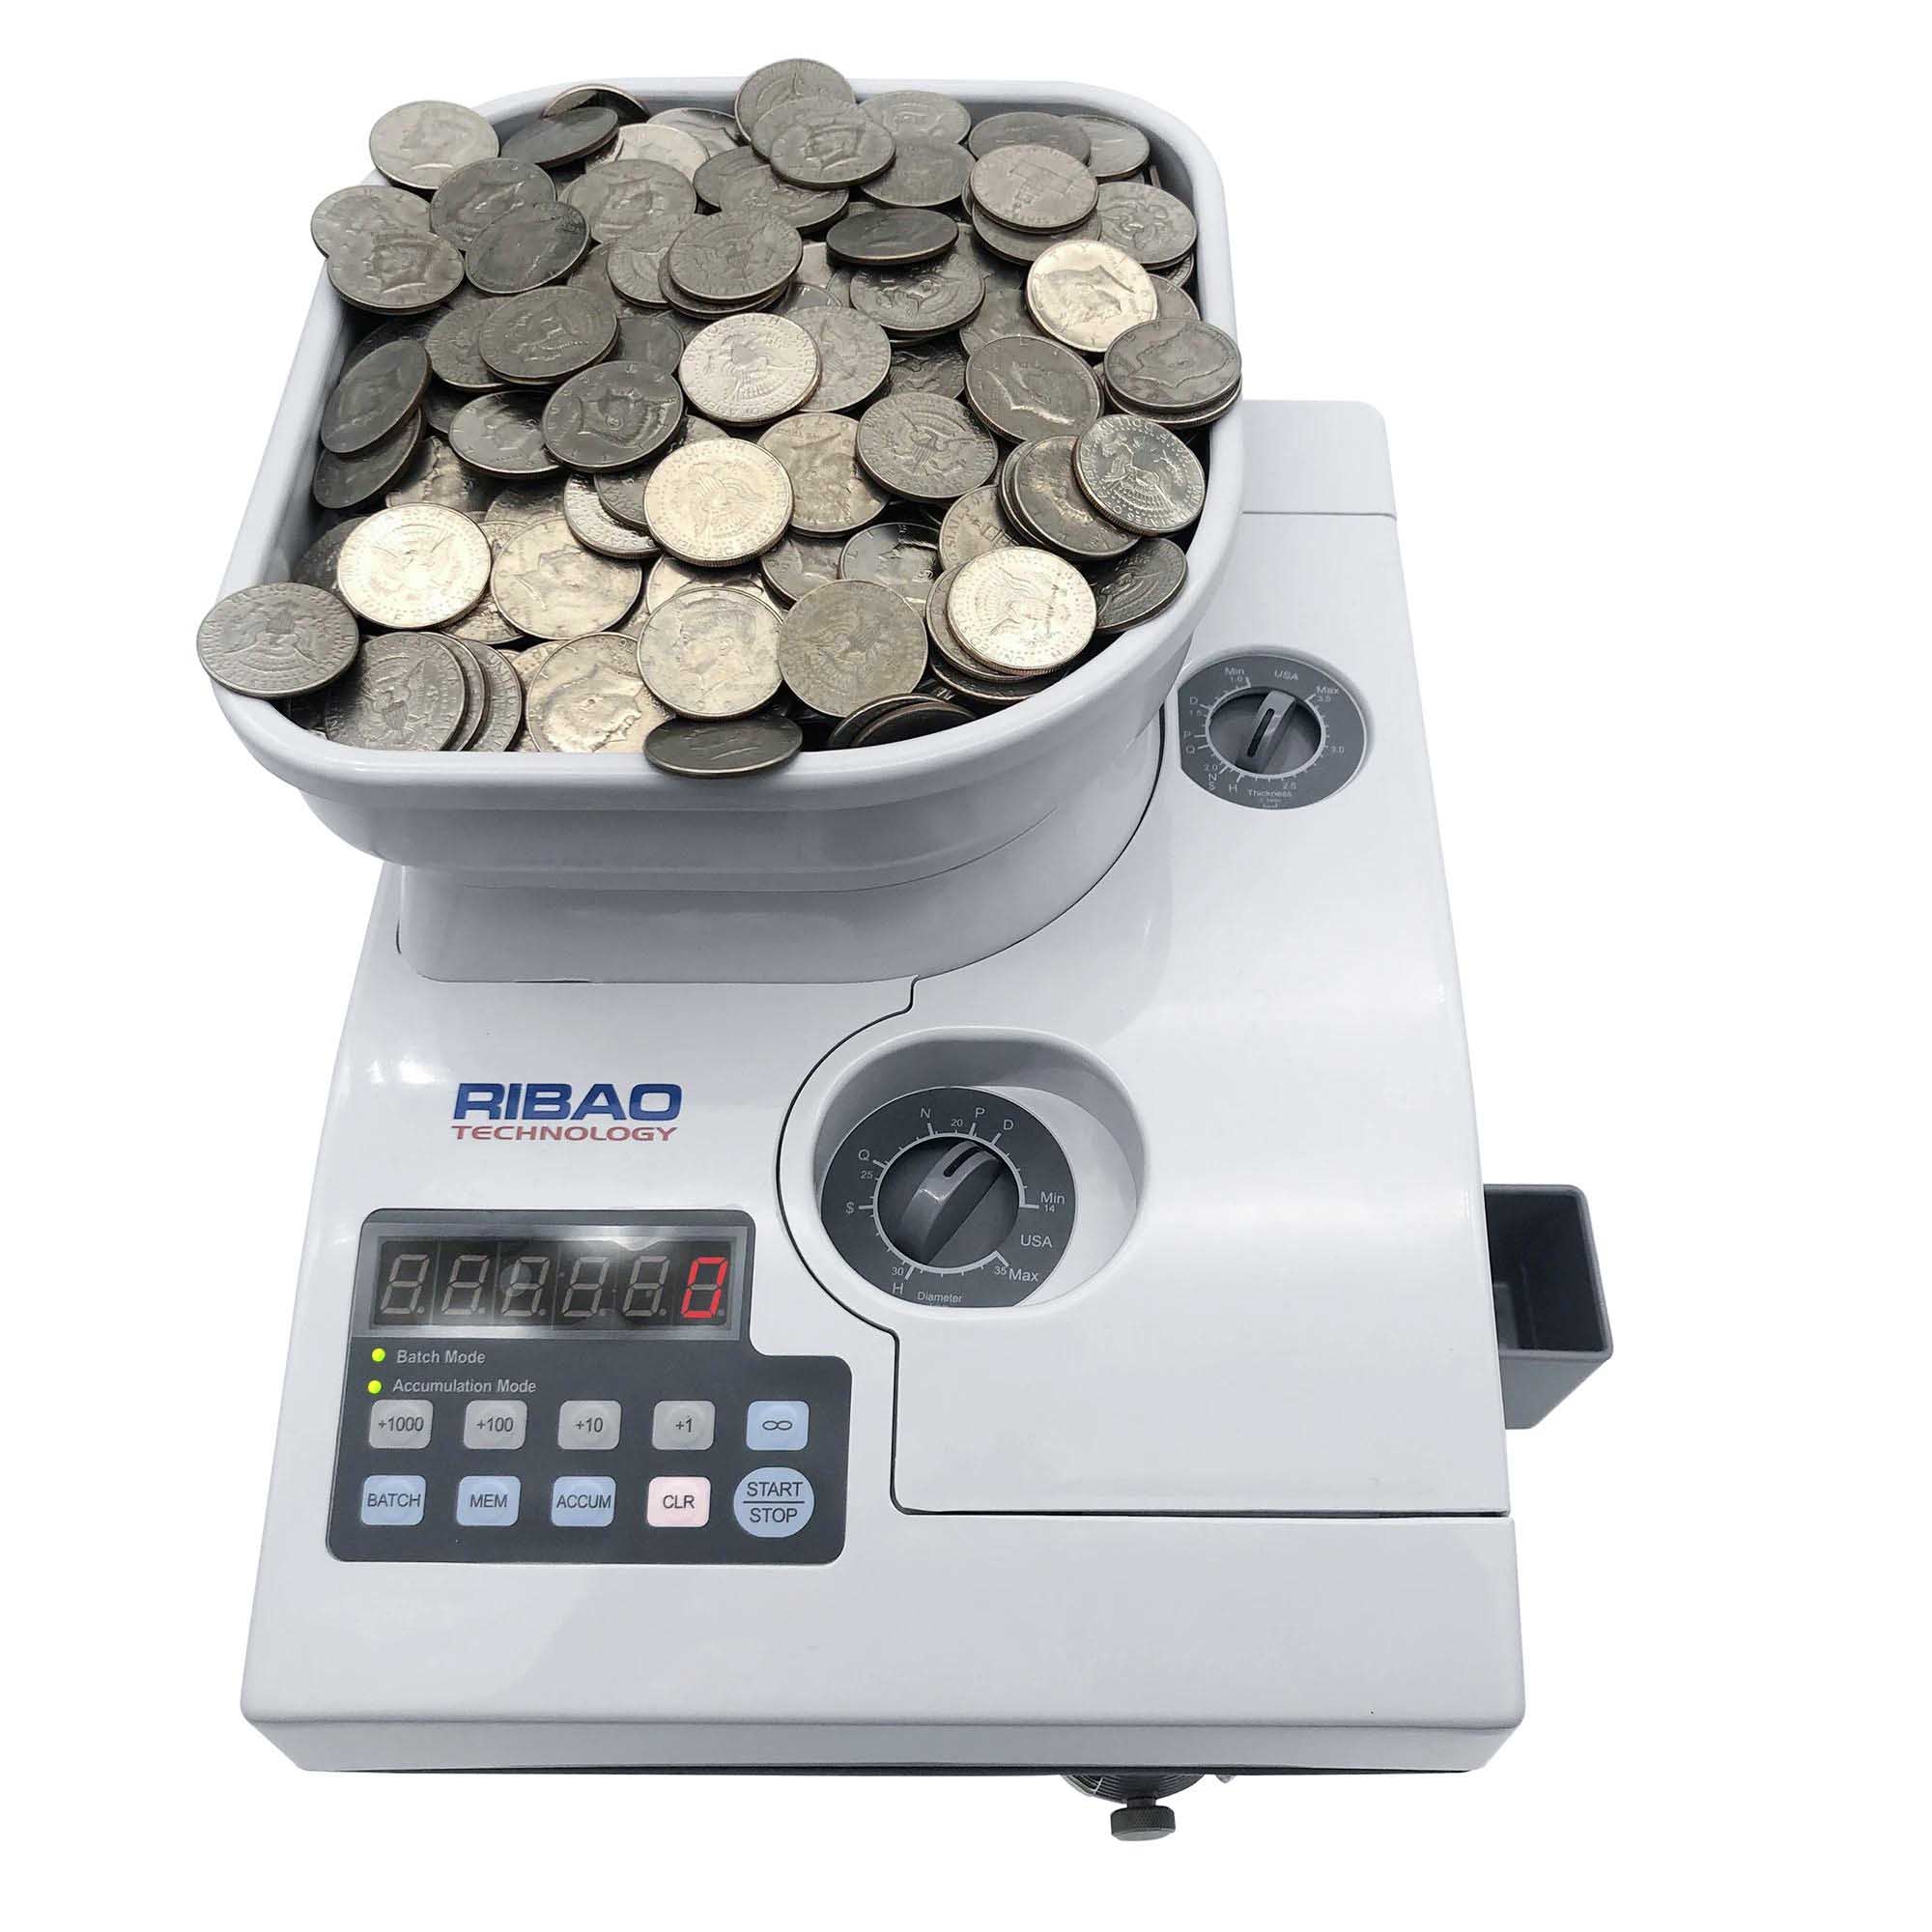 Ribao CS-10S Compact and Portable High Speed Coin Counter & Sorter